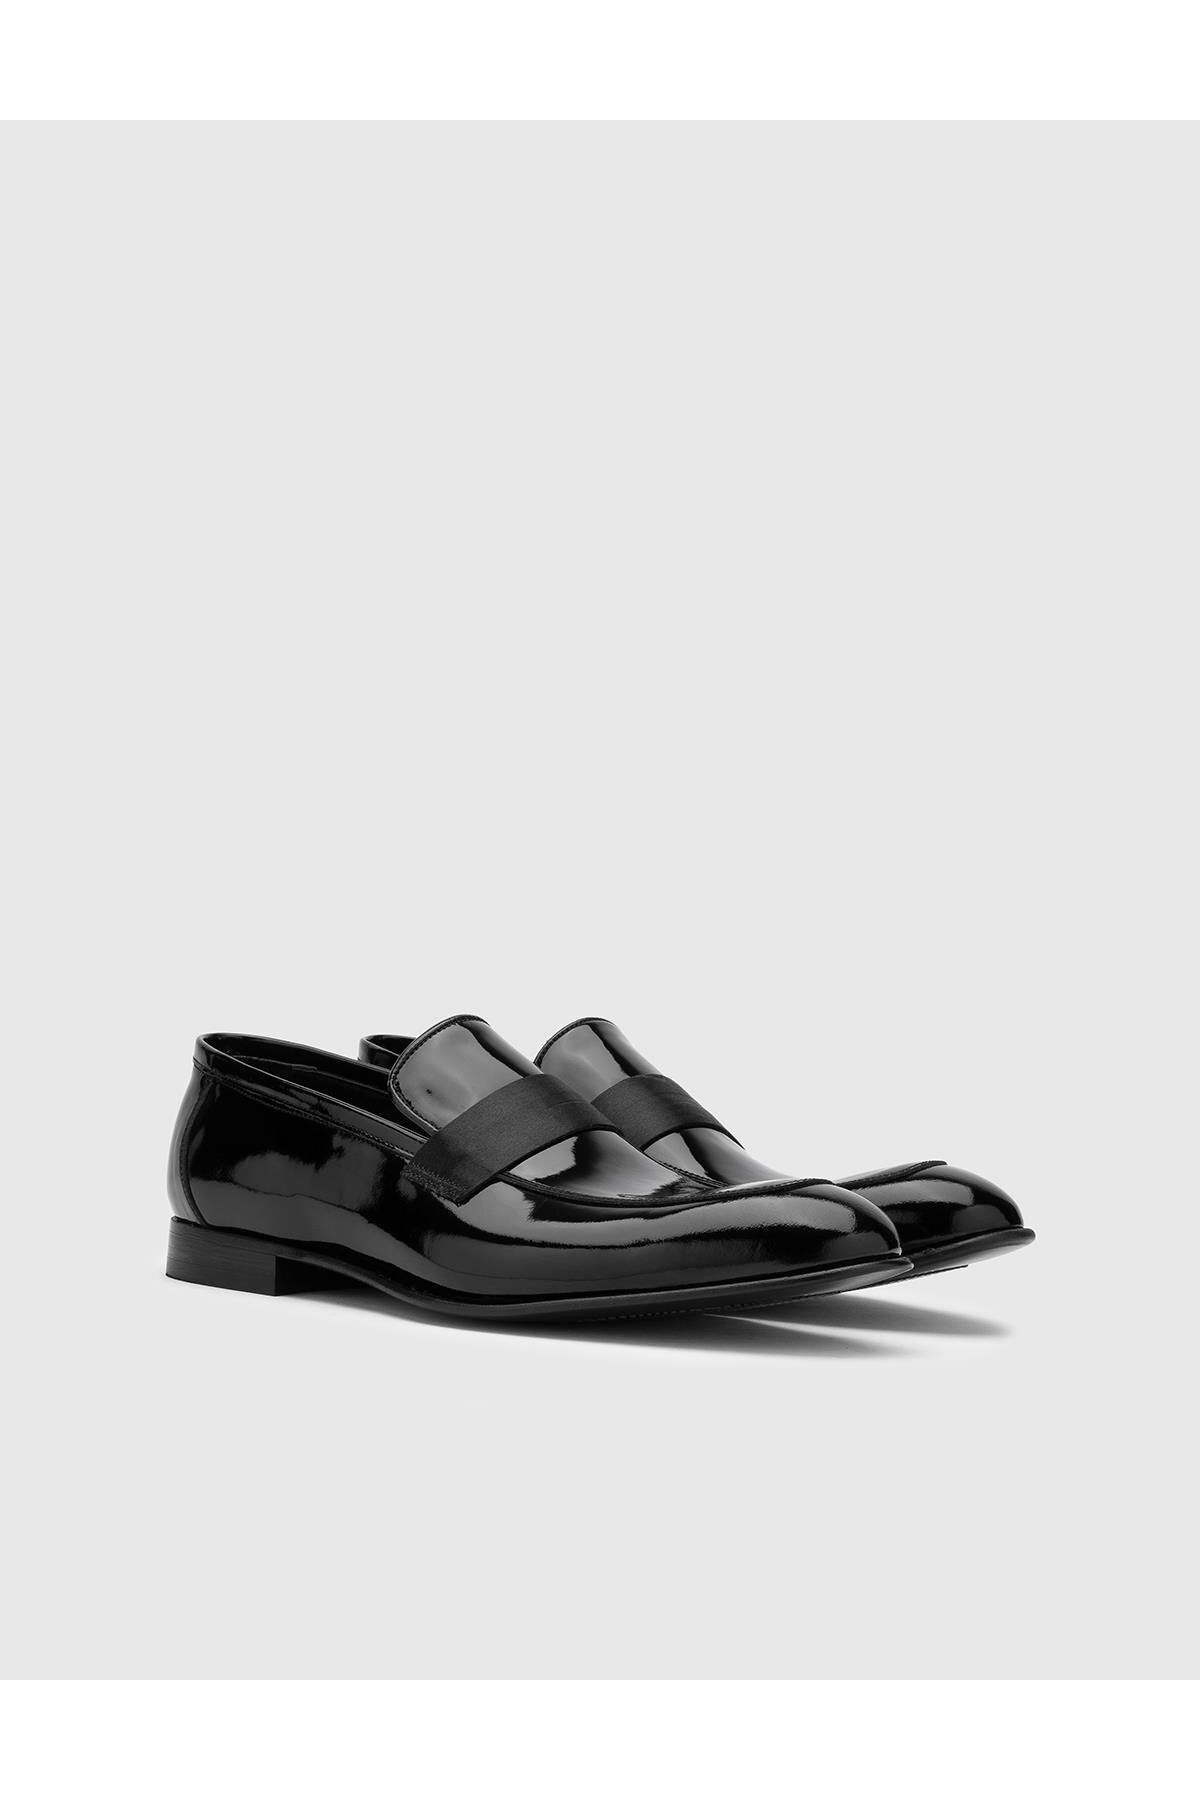 İlvi Cosmos Мужские черные классические туфли из натуральной лакированной кожи Cosmos-9745.1008